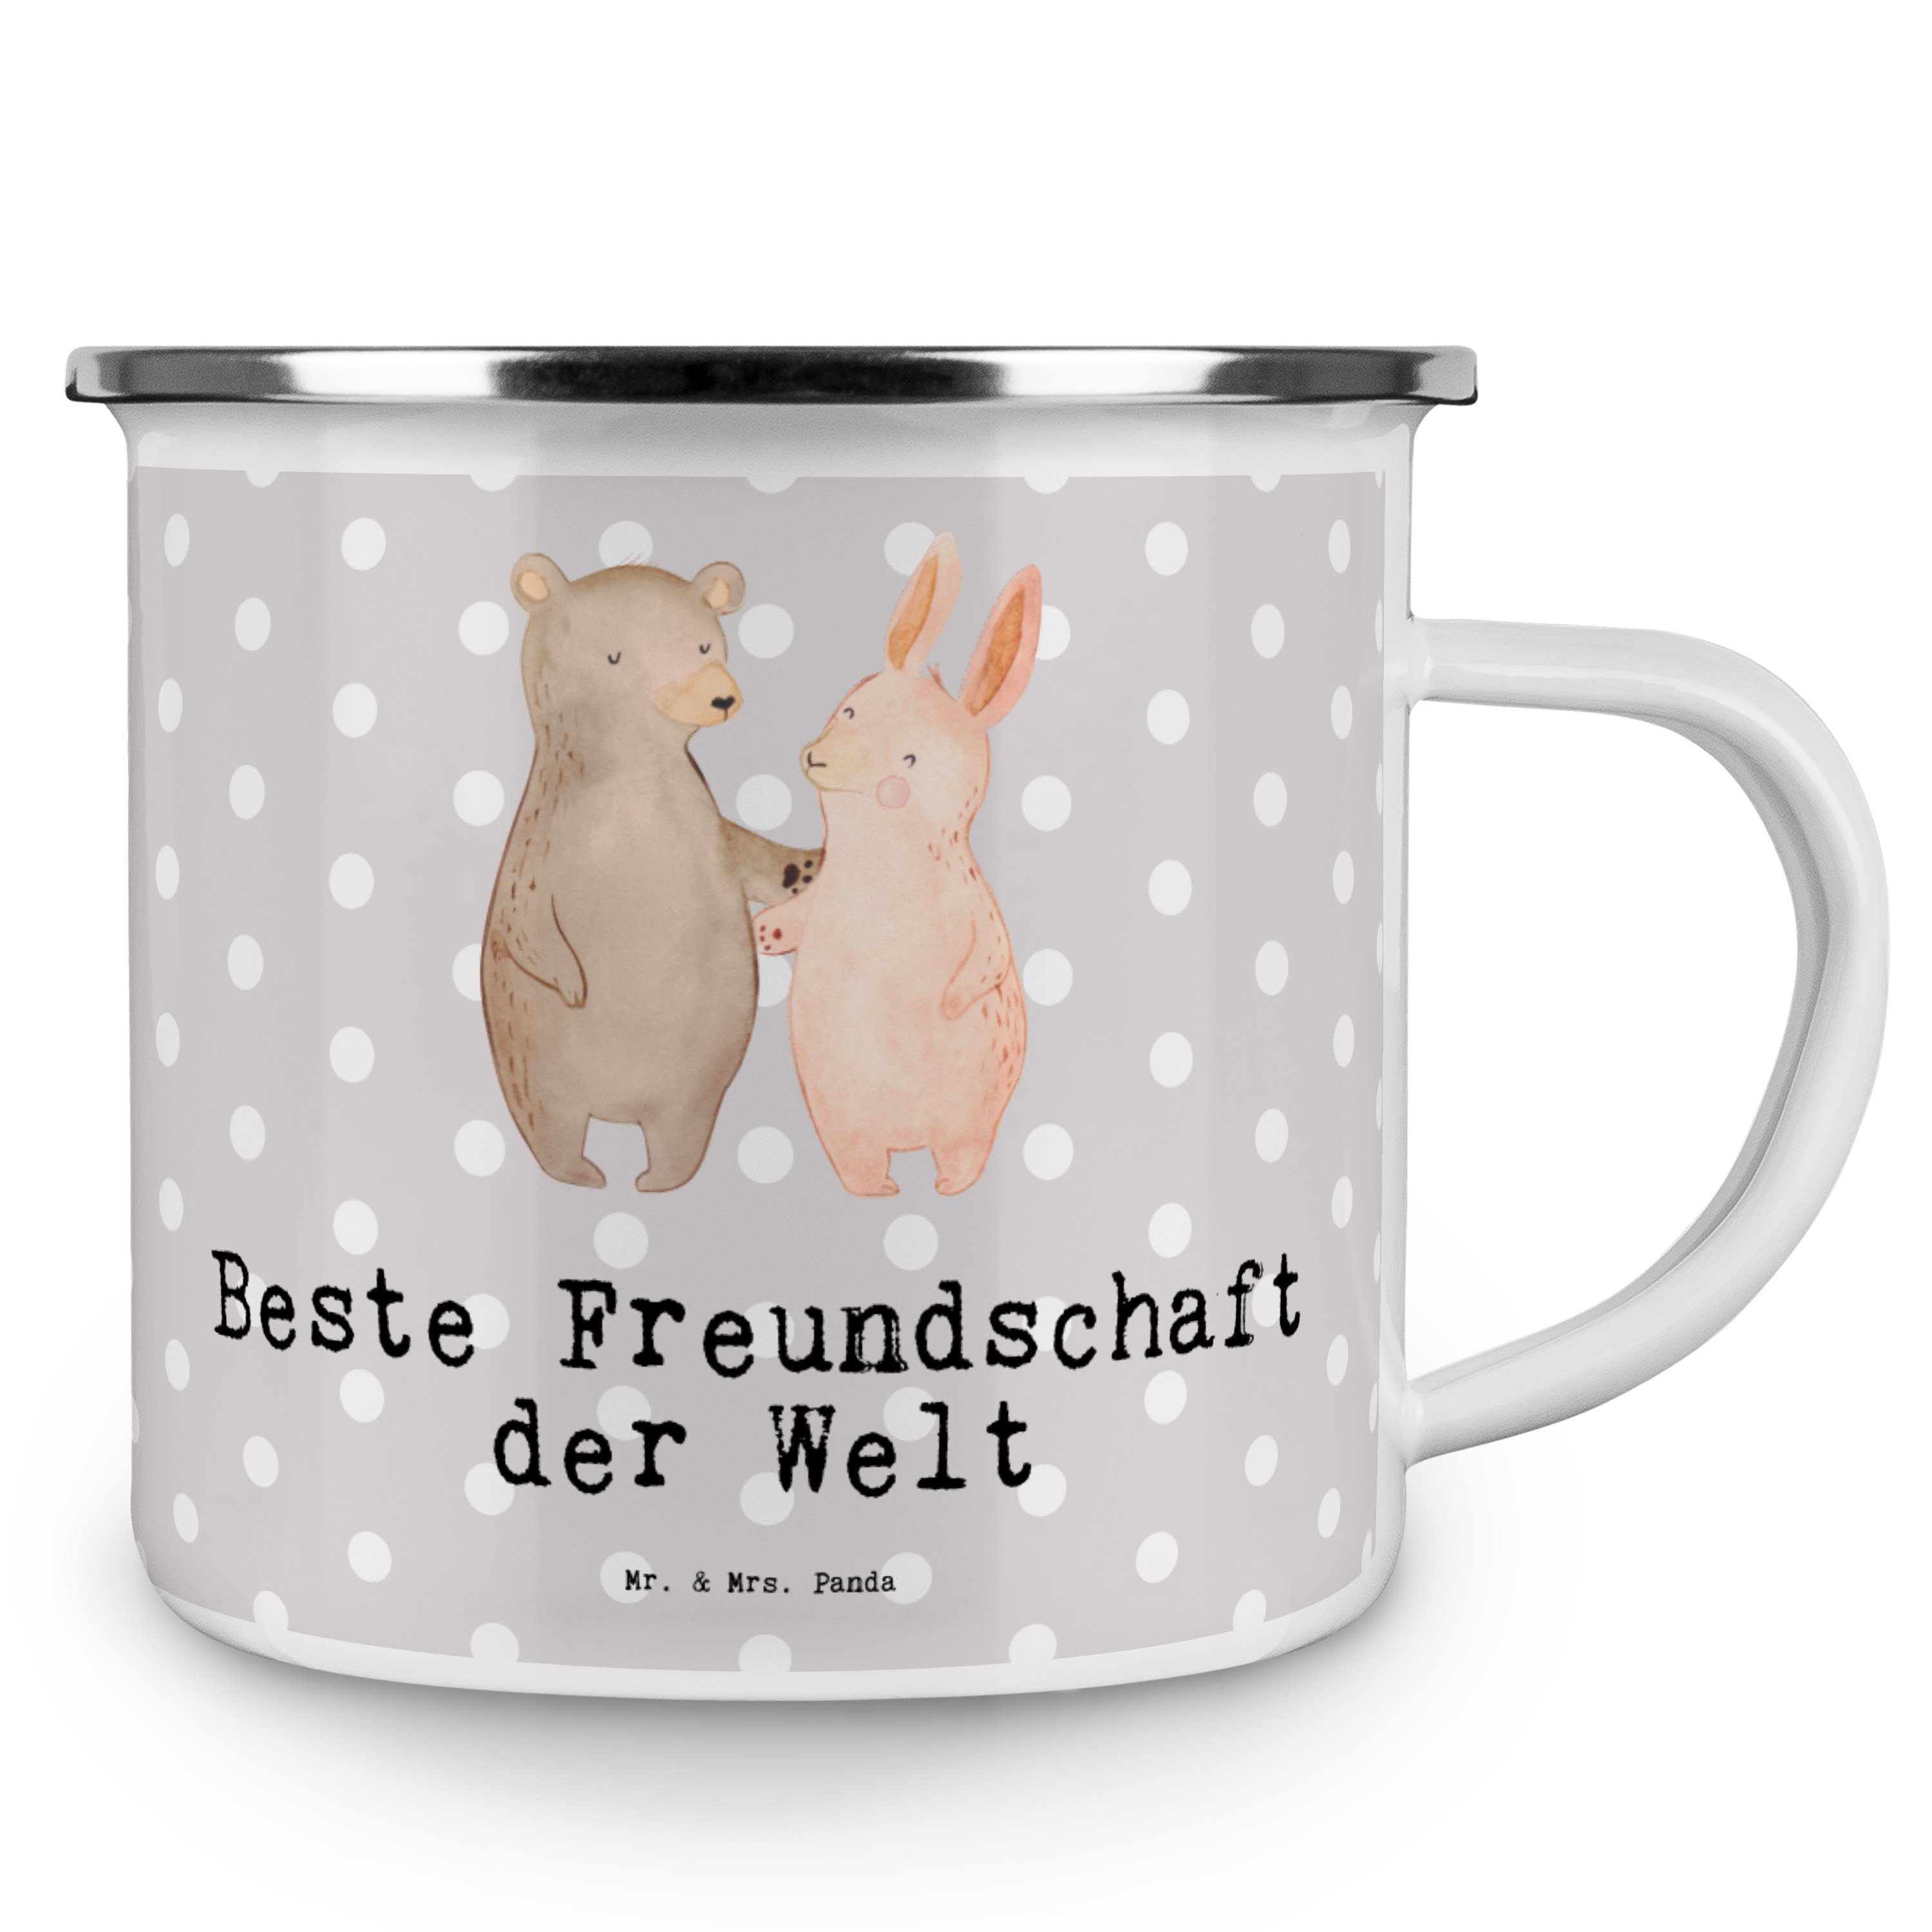 Mr. & Mrs. Panda Becher Freunde Welt der - - Pastell Hase Freundschaft f, Grau Beste Emaille Geschenk